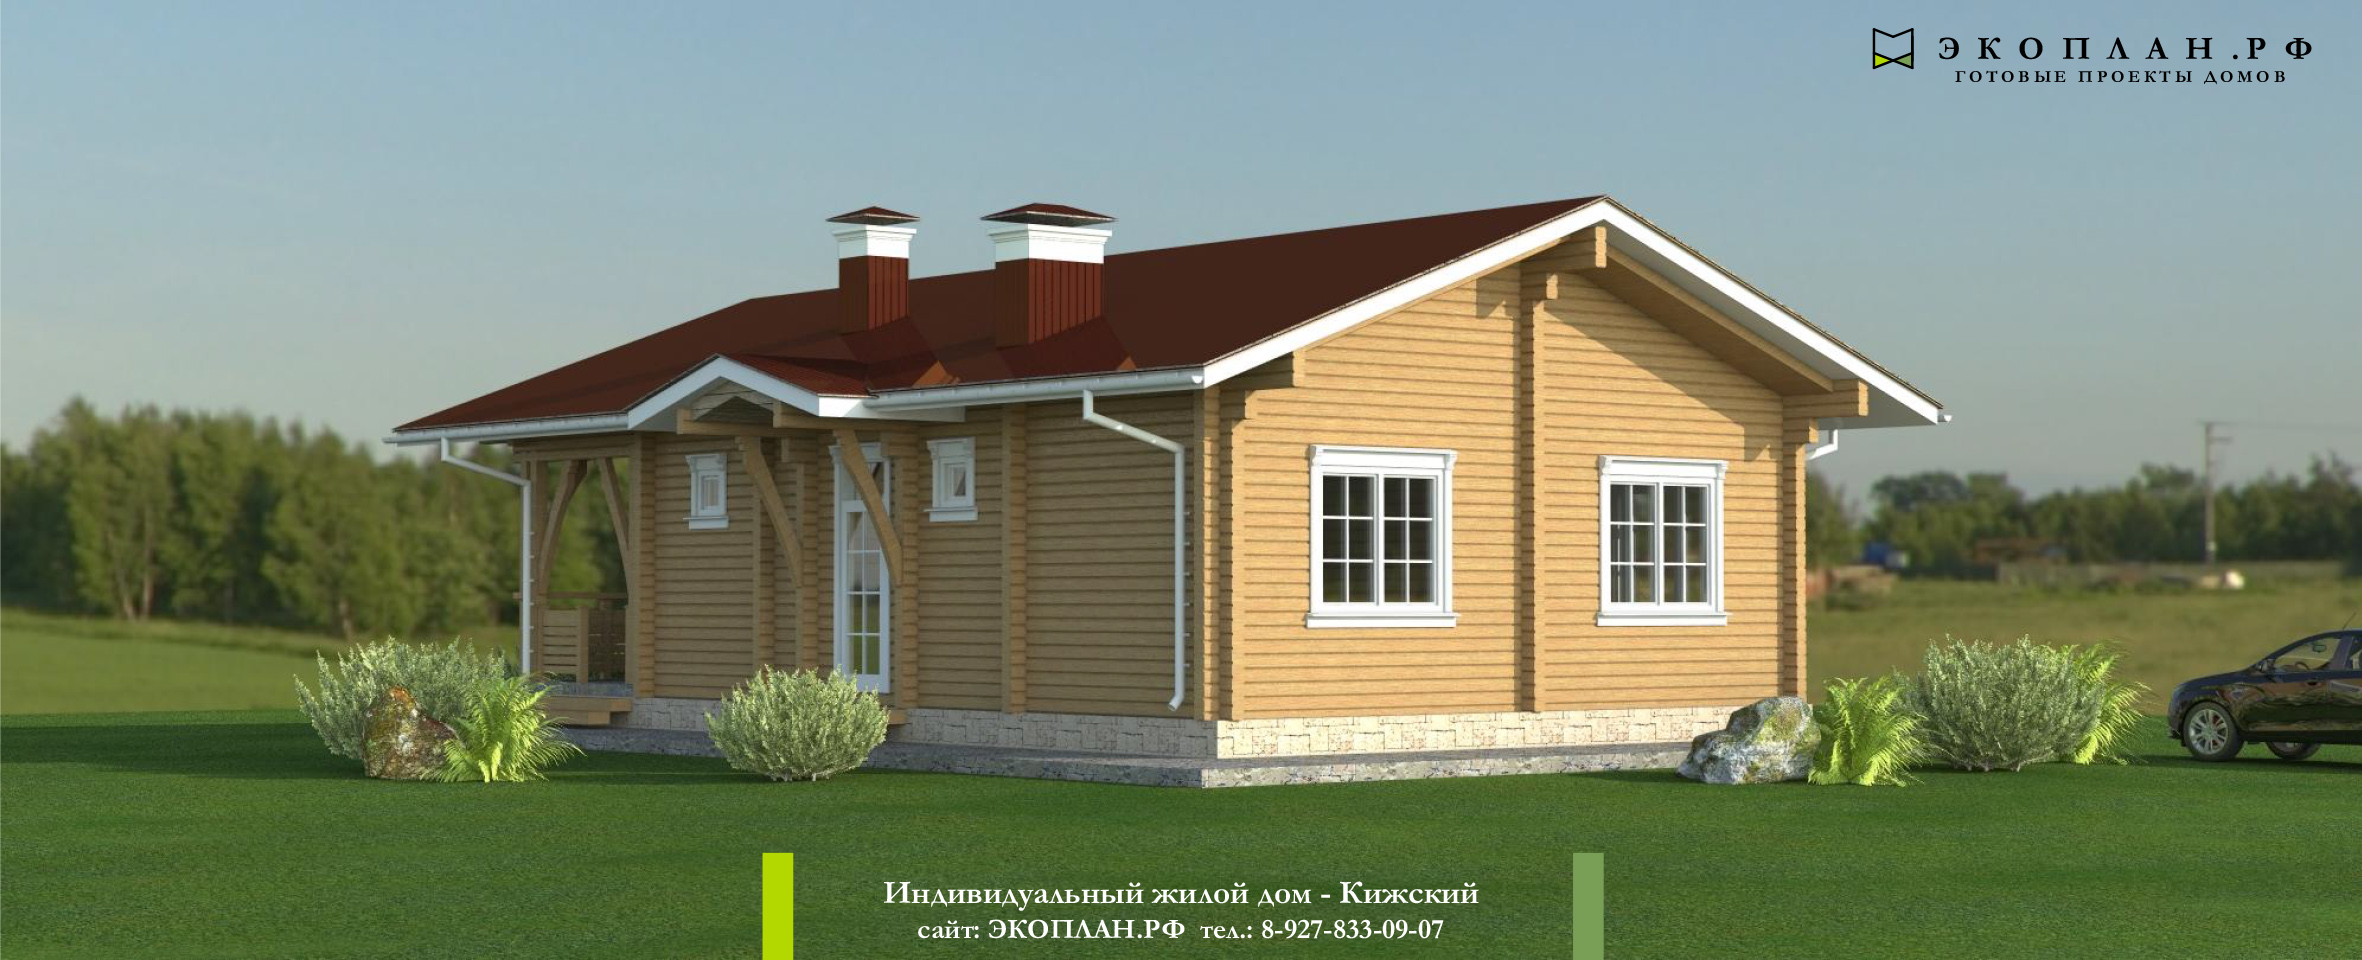 Готовый проект дома - Кижский - Экоплан.рф фасад